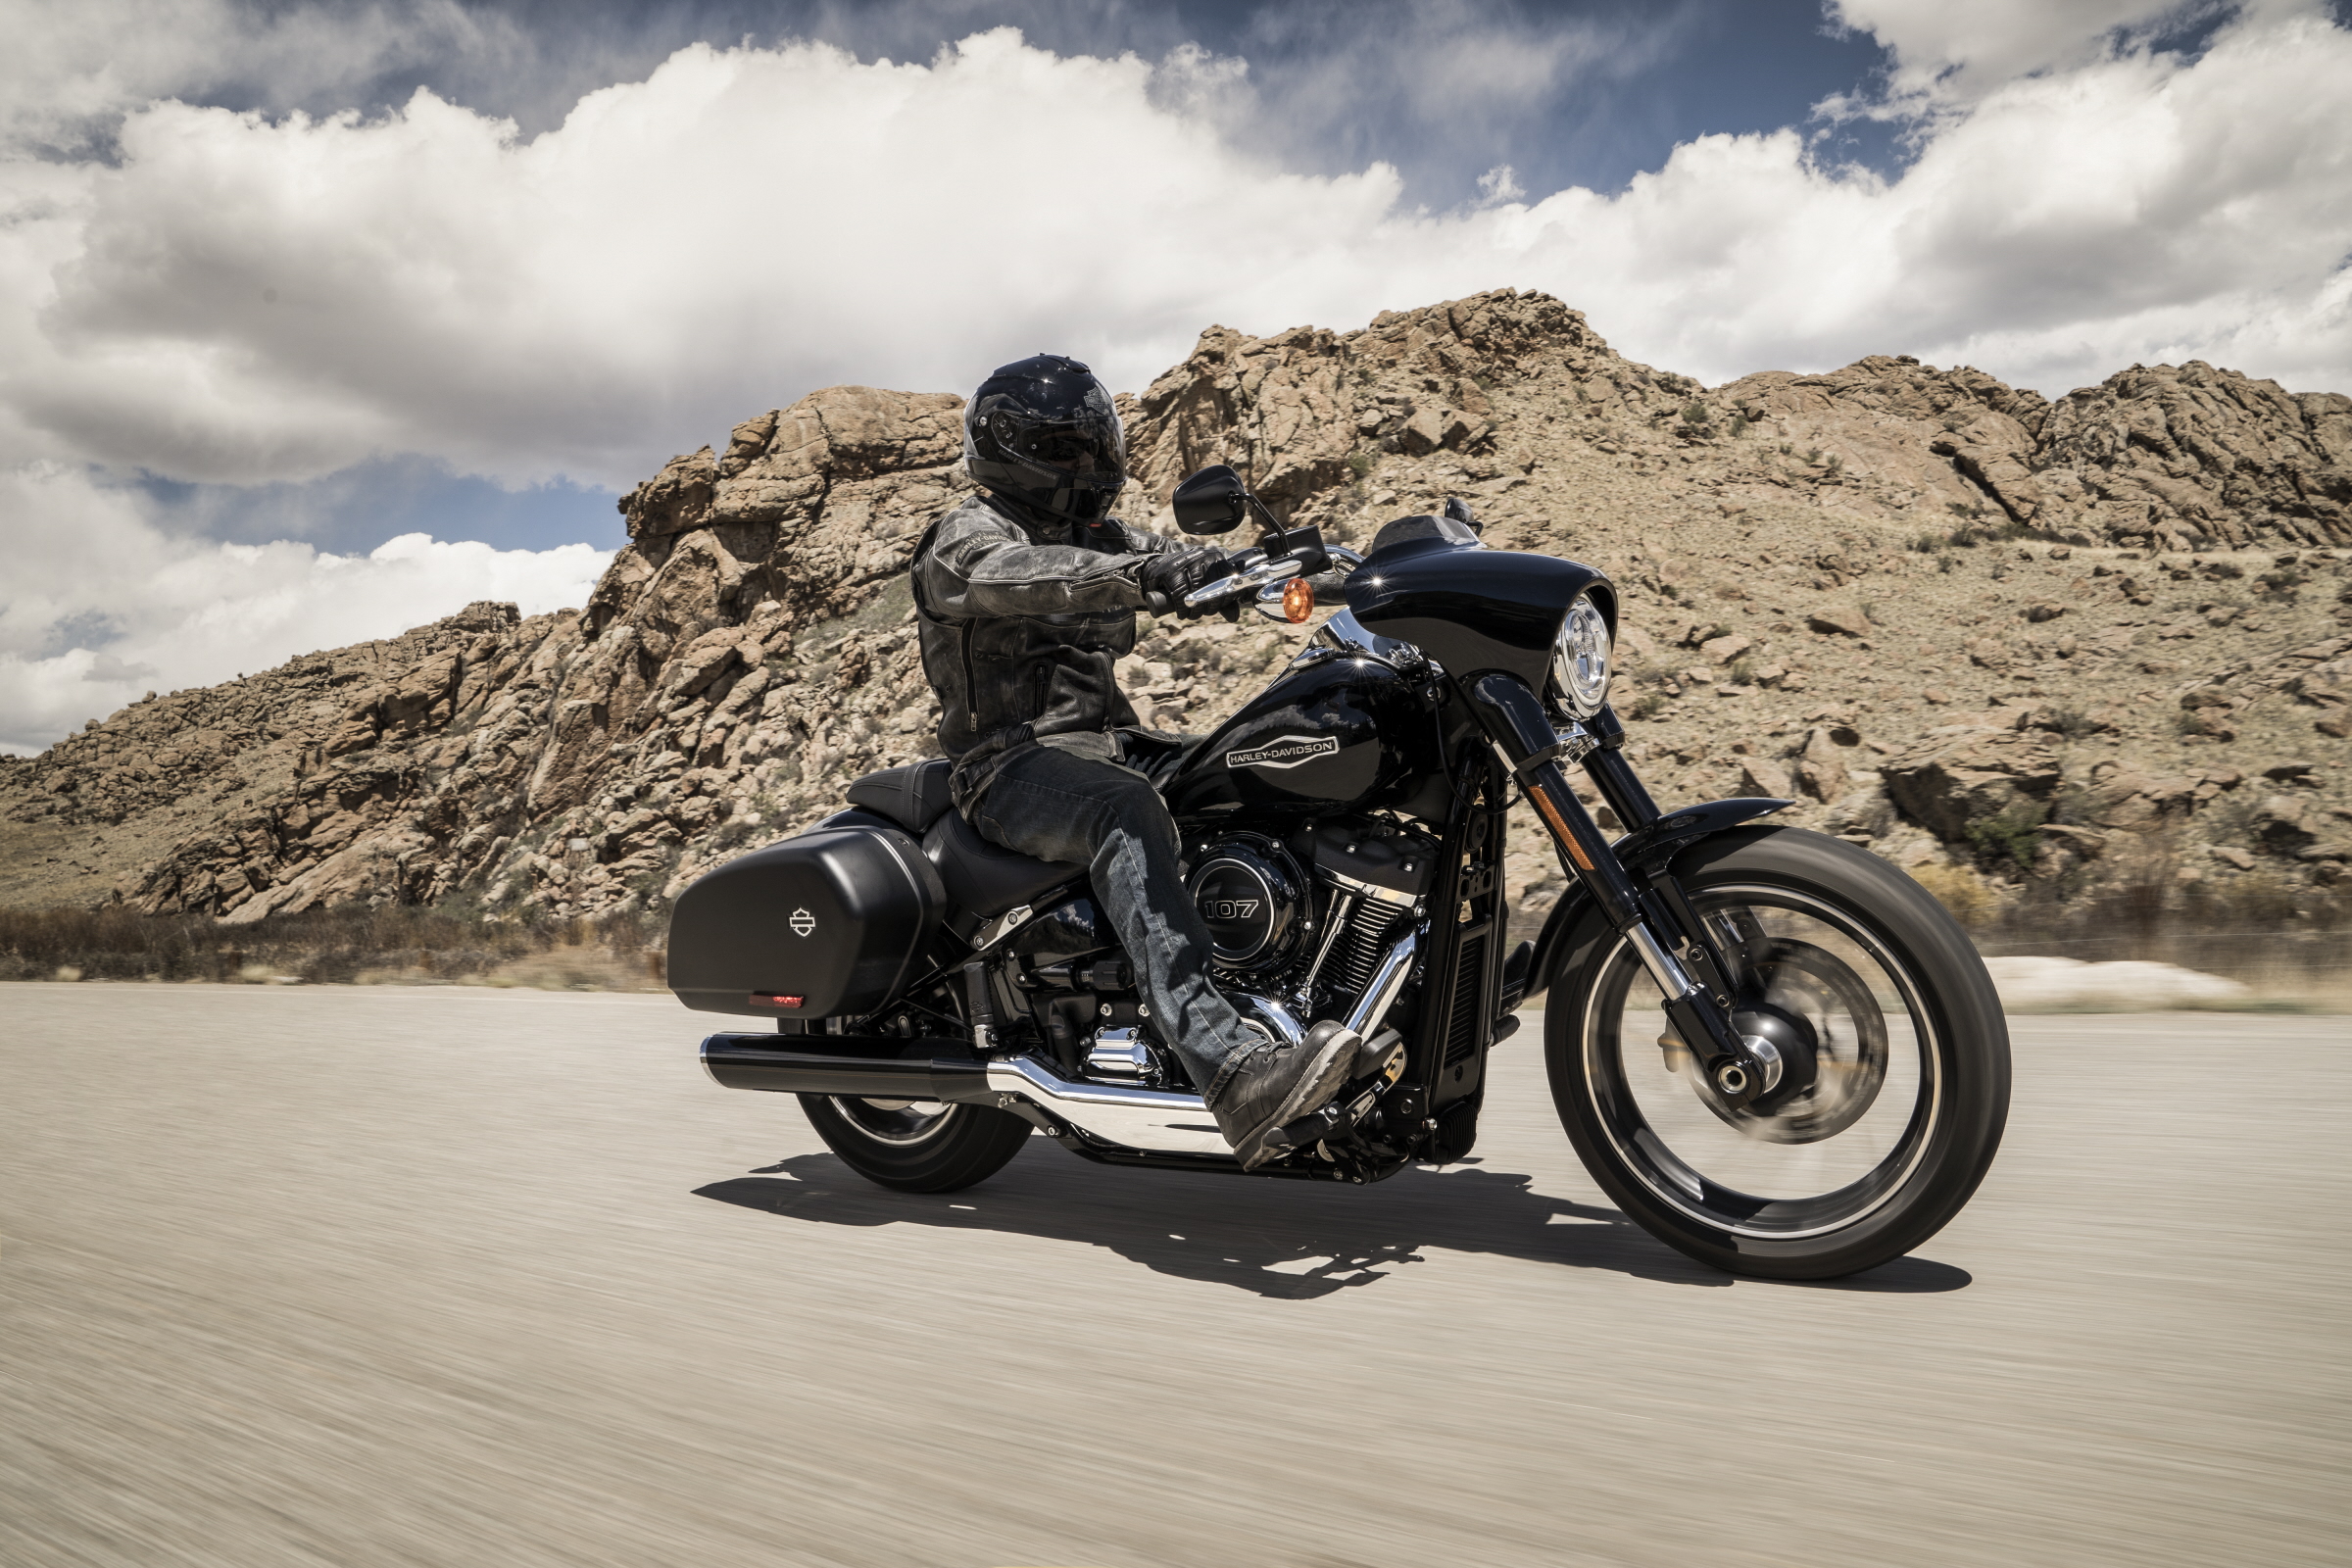 Harley-Davidson do Brasil ressalta a importância da manutenção preventiva da coluna de direção das motos